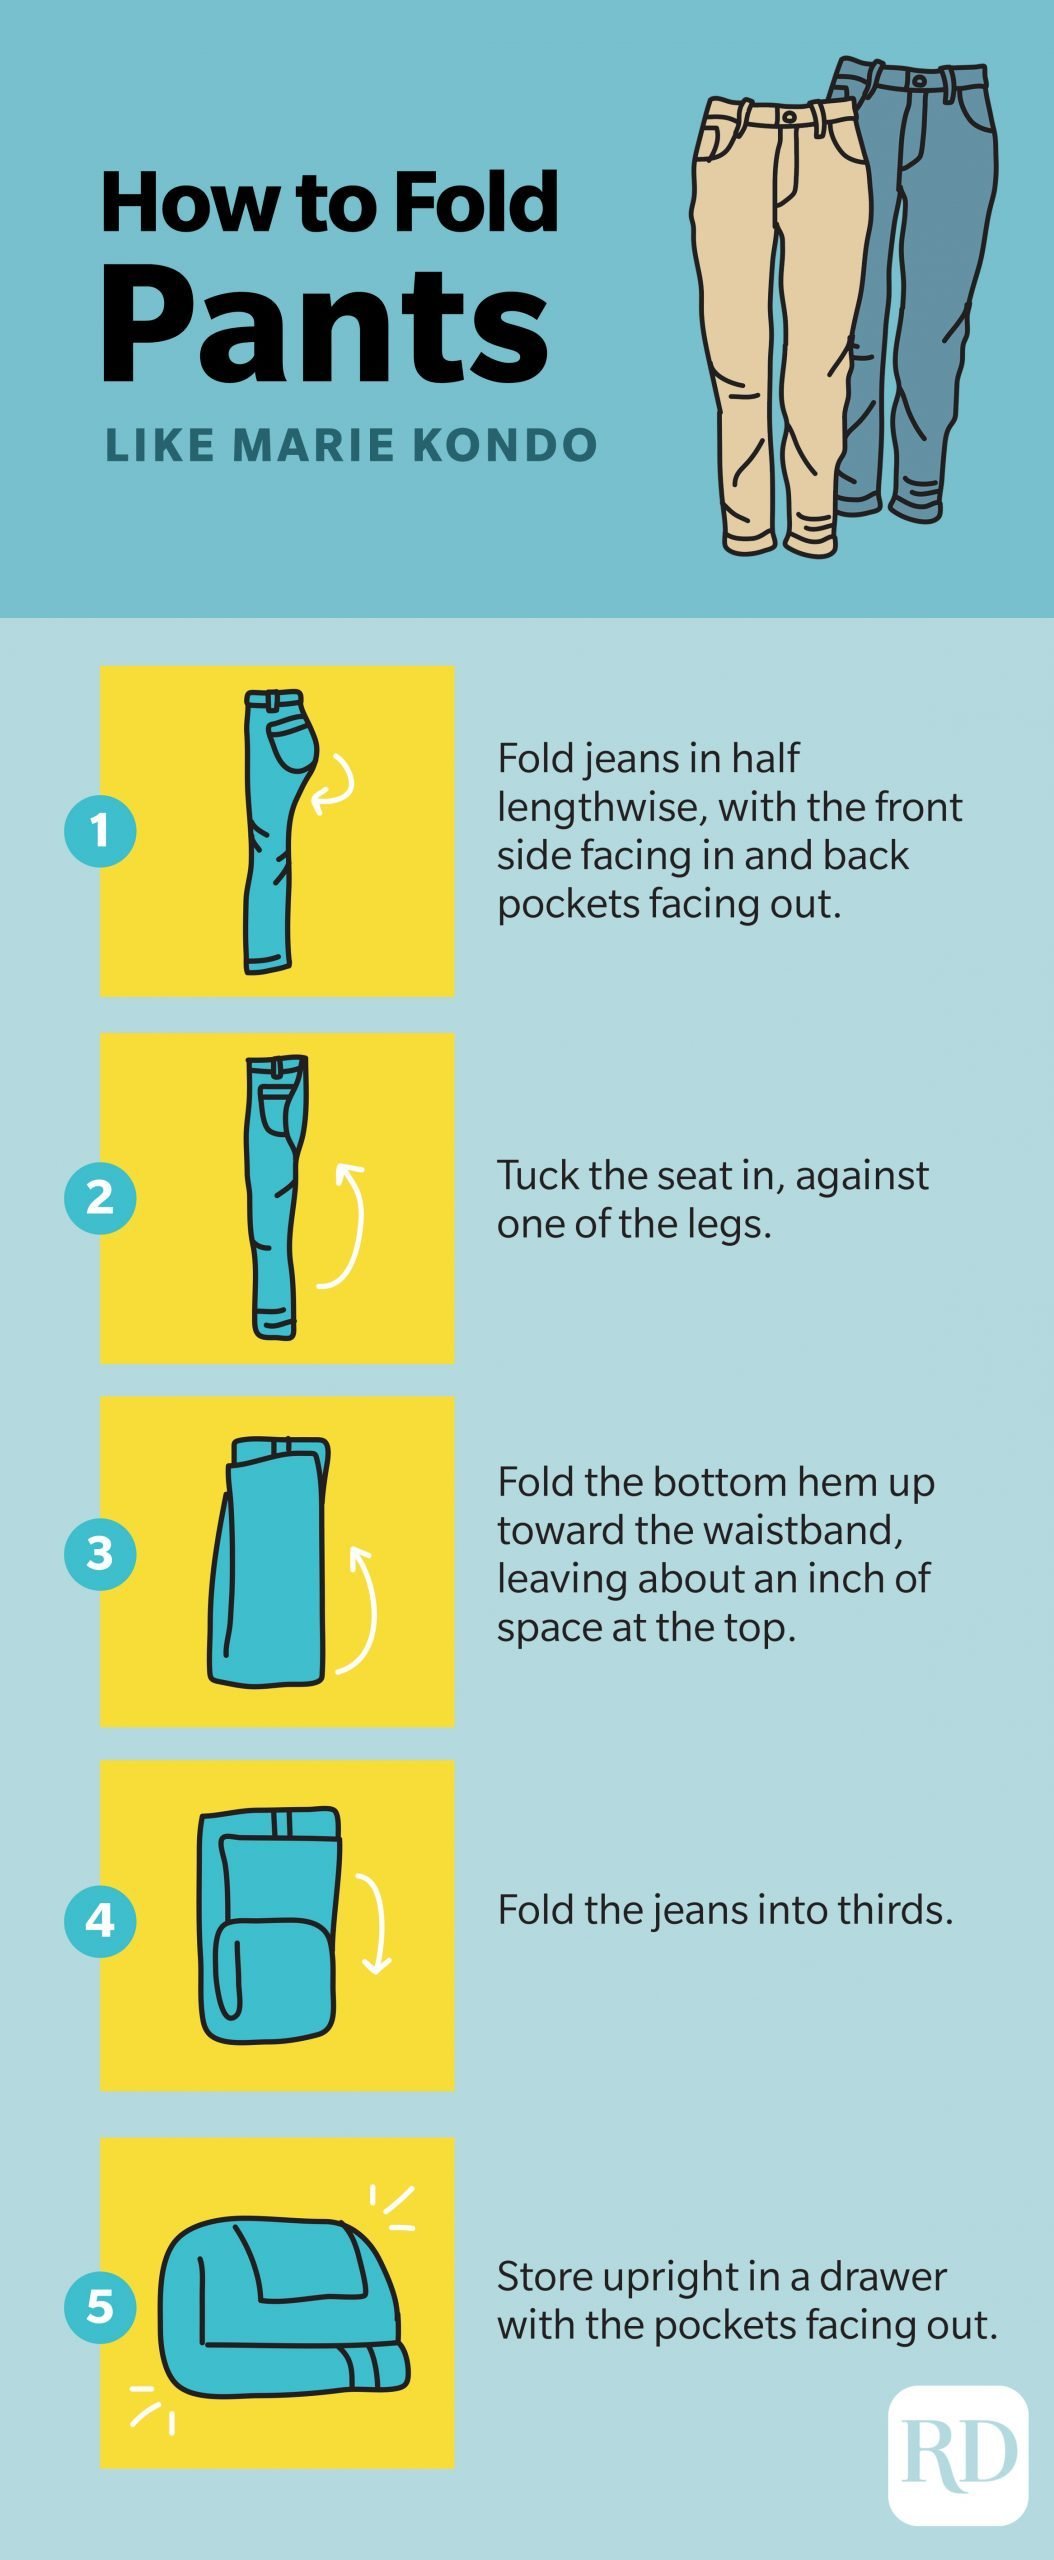 How to fold pants like Marie Kondo infographic